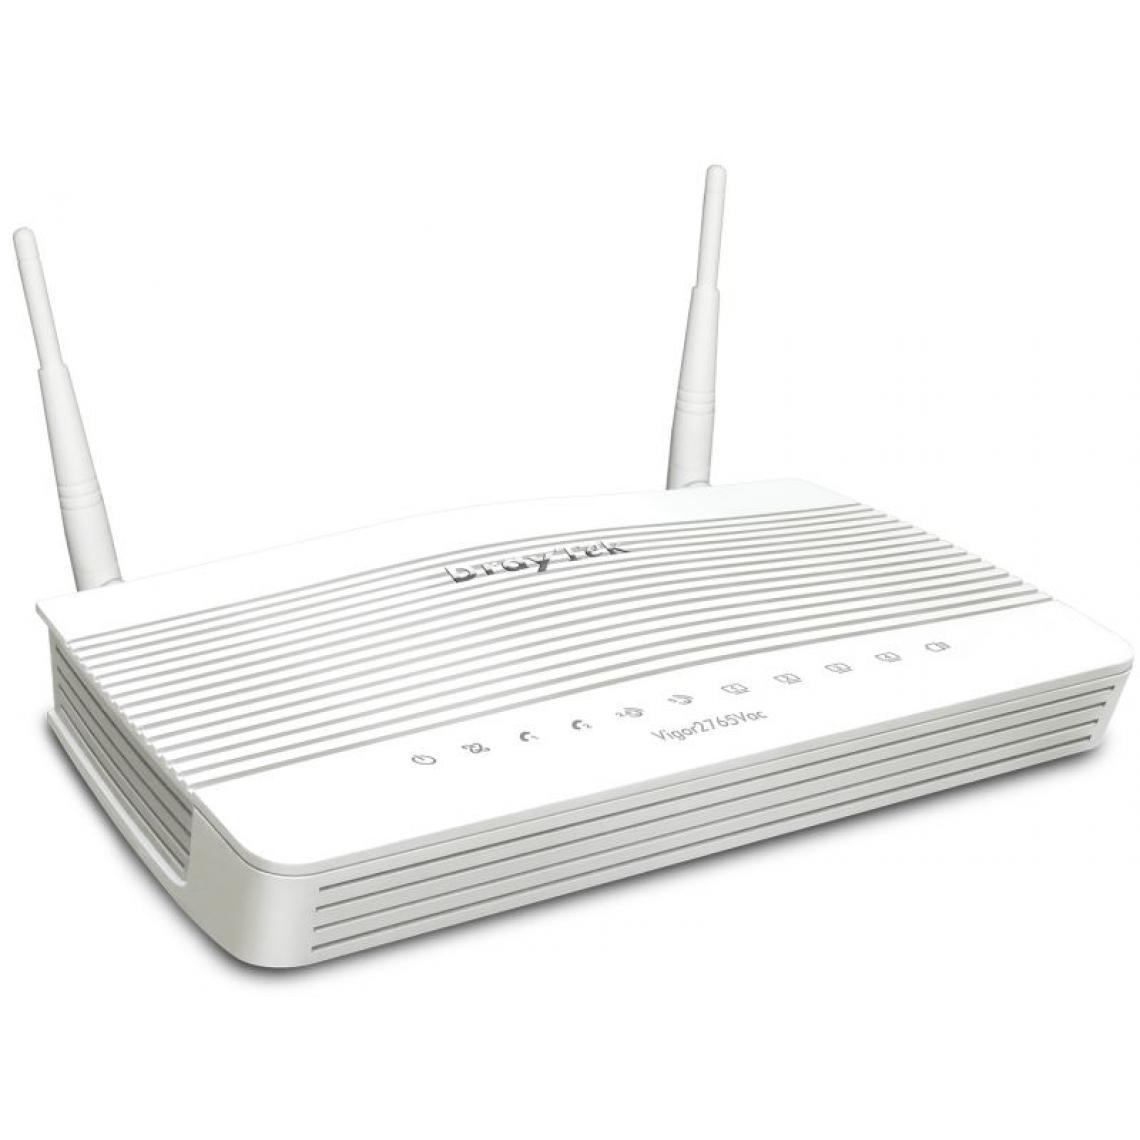 Inconnu - Draytek Vigor2765ac routeur sans fil Gigabit Ethernet Bi-bande (2,4 GHz / 5 GHz) Blanc - Modem / Routeur / Points d'accès